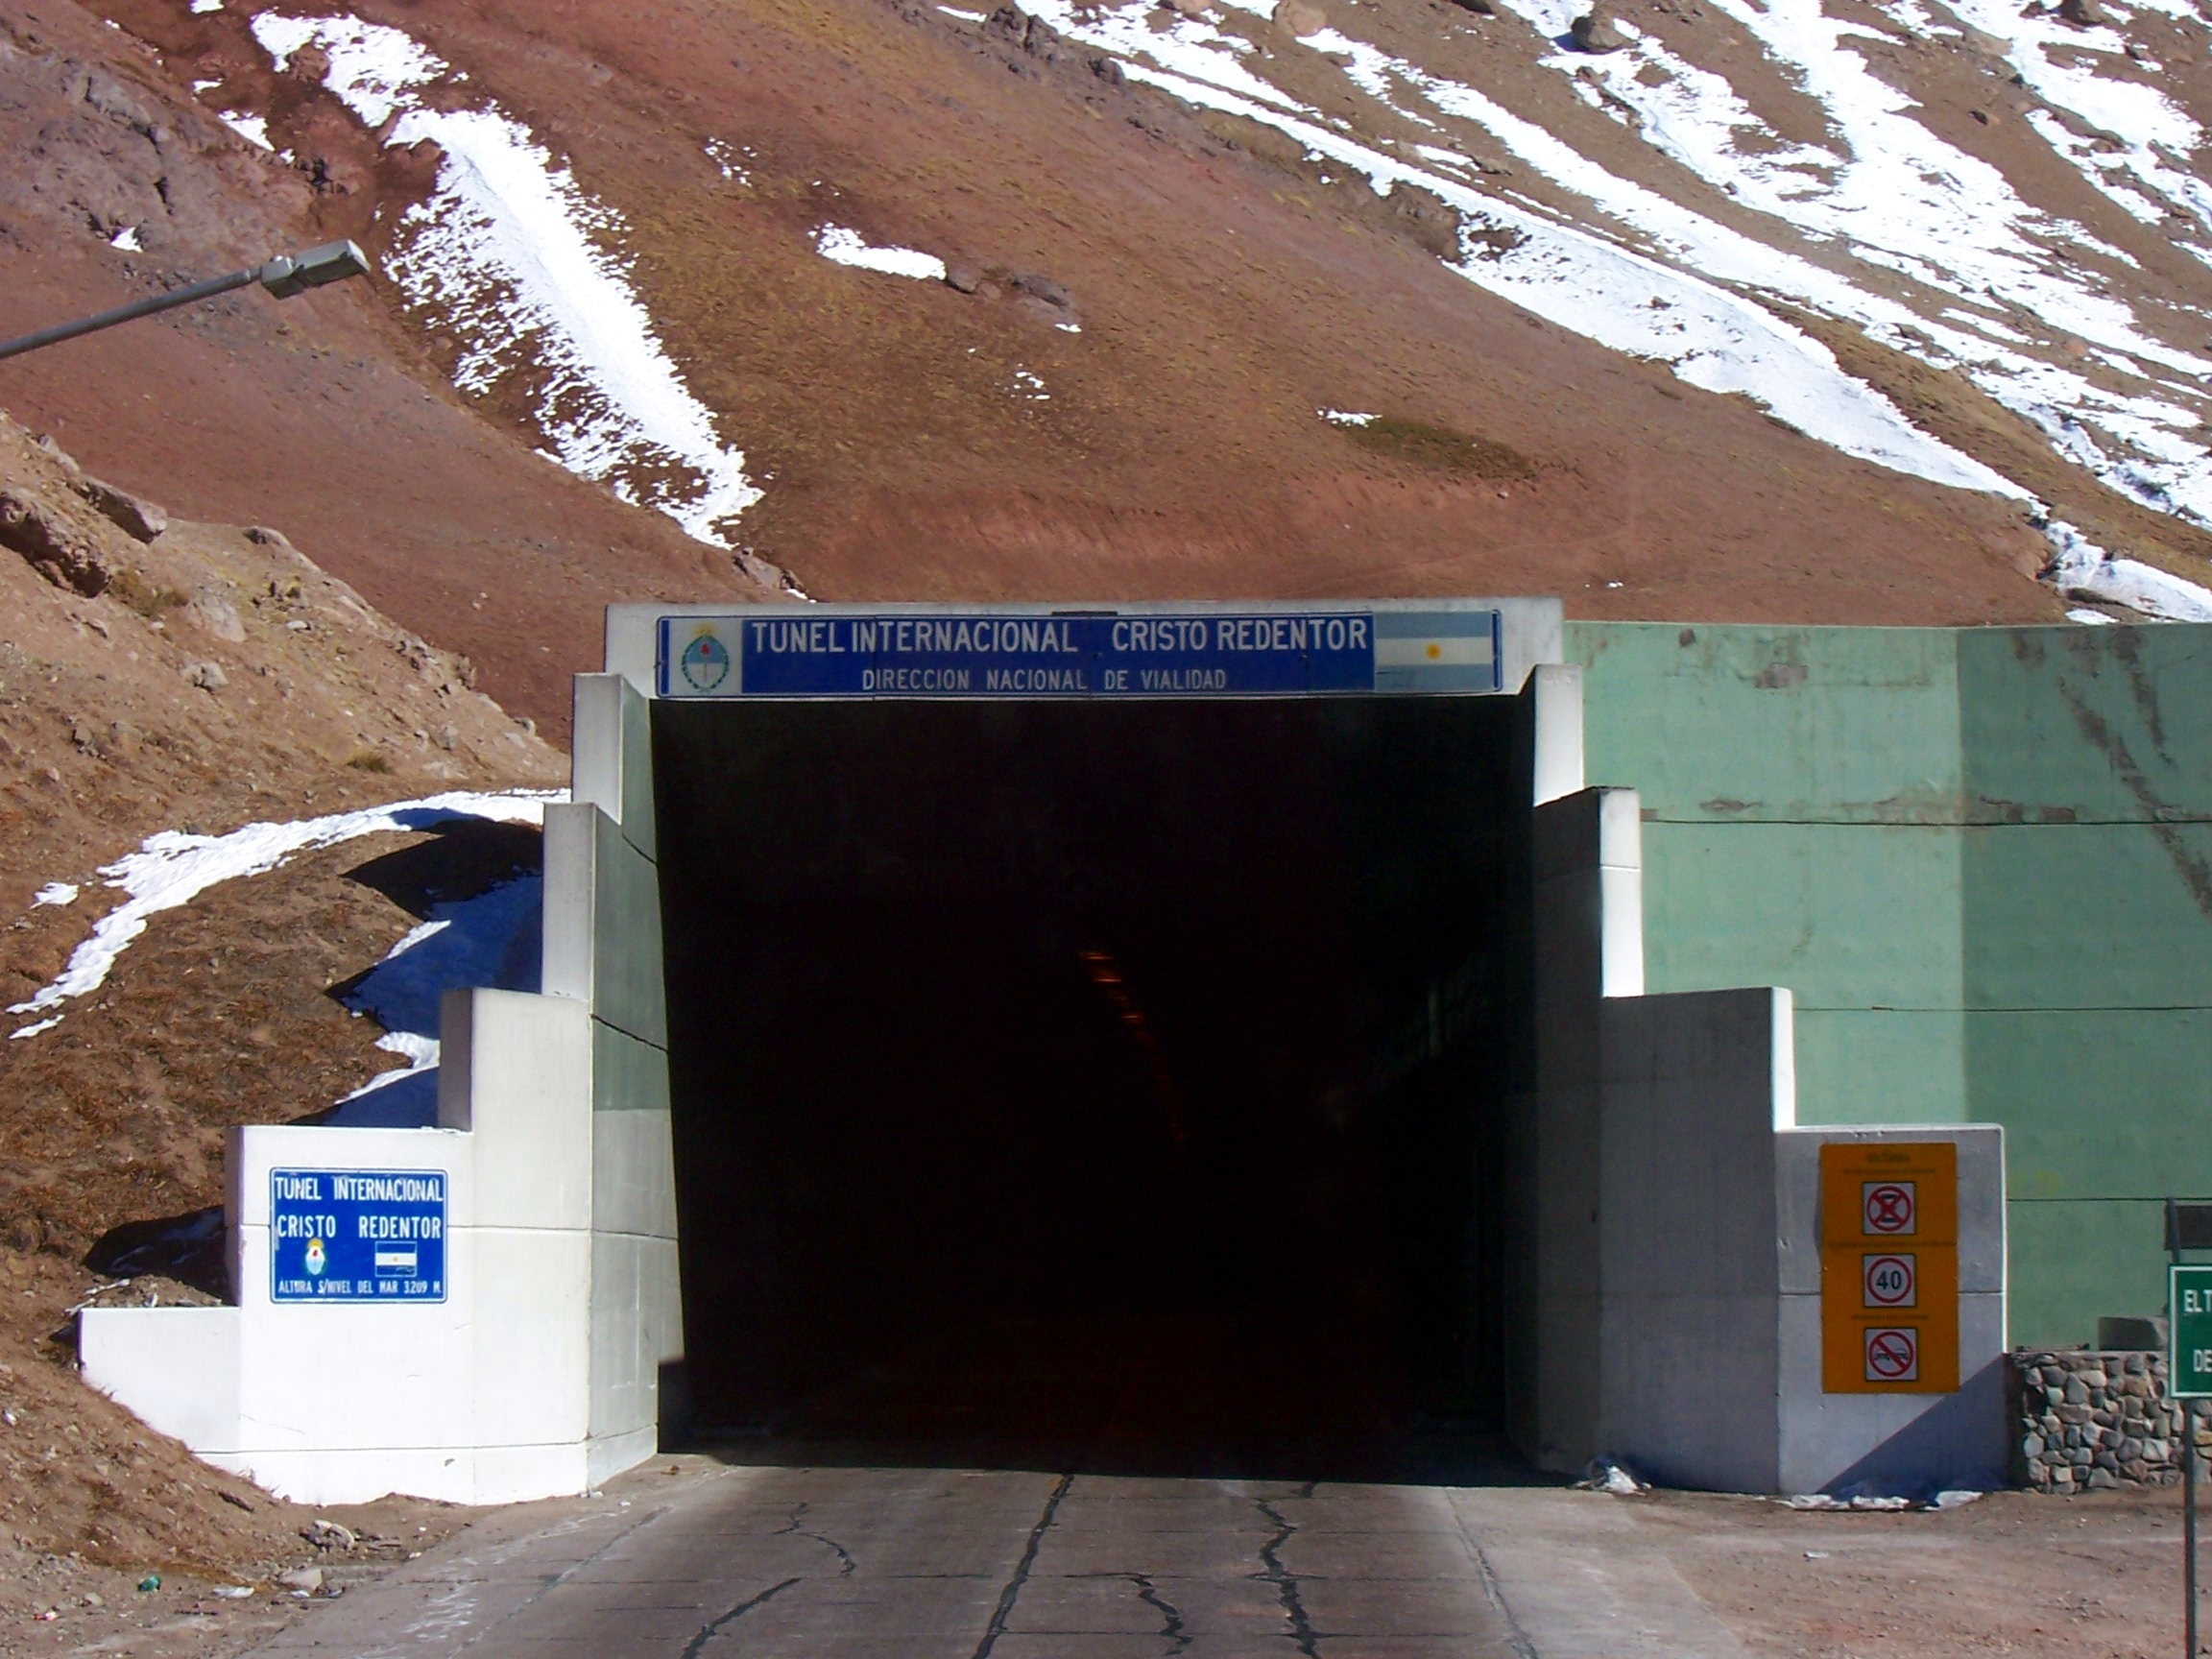 Tunel-Iternacional-Cristo-Redentor-Mendoza-Argentina